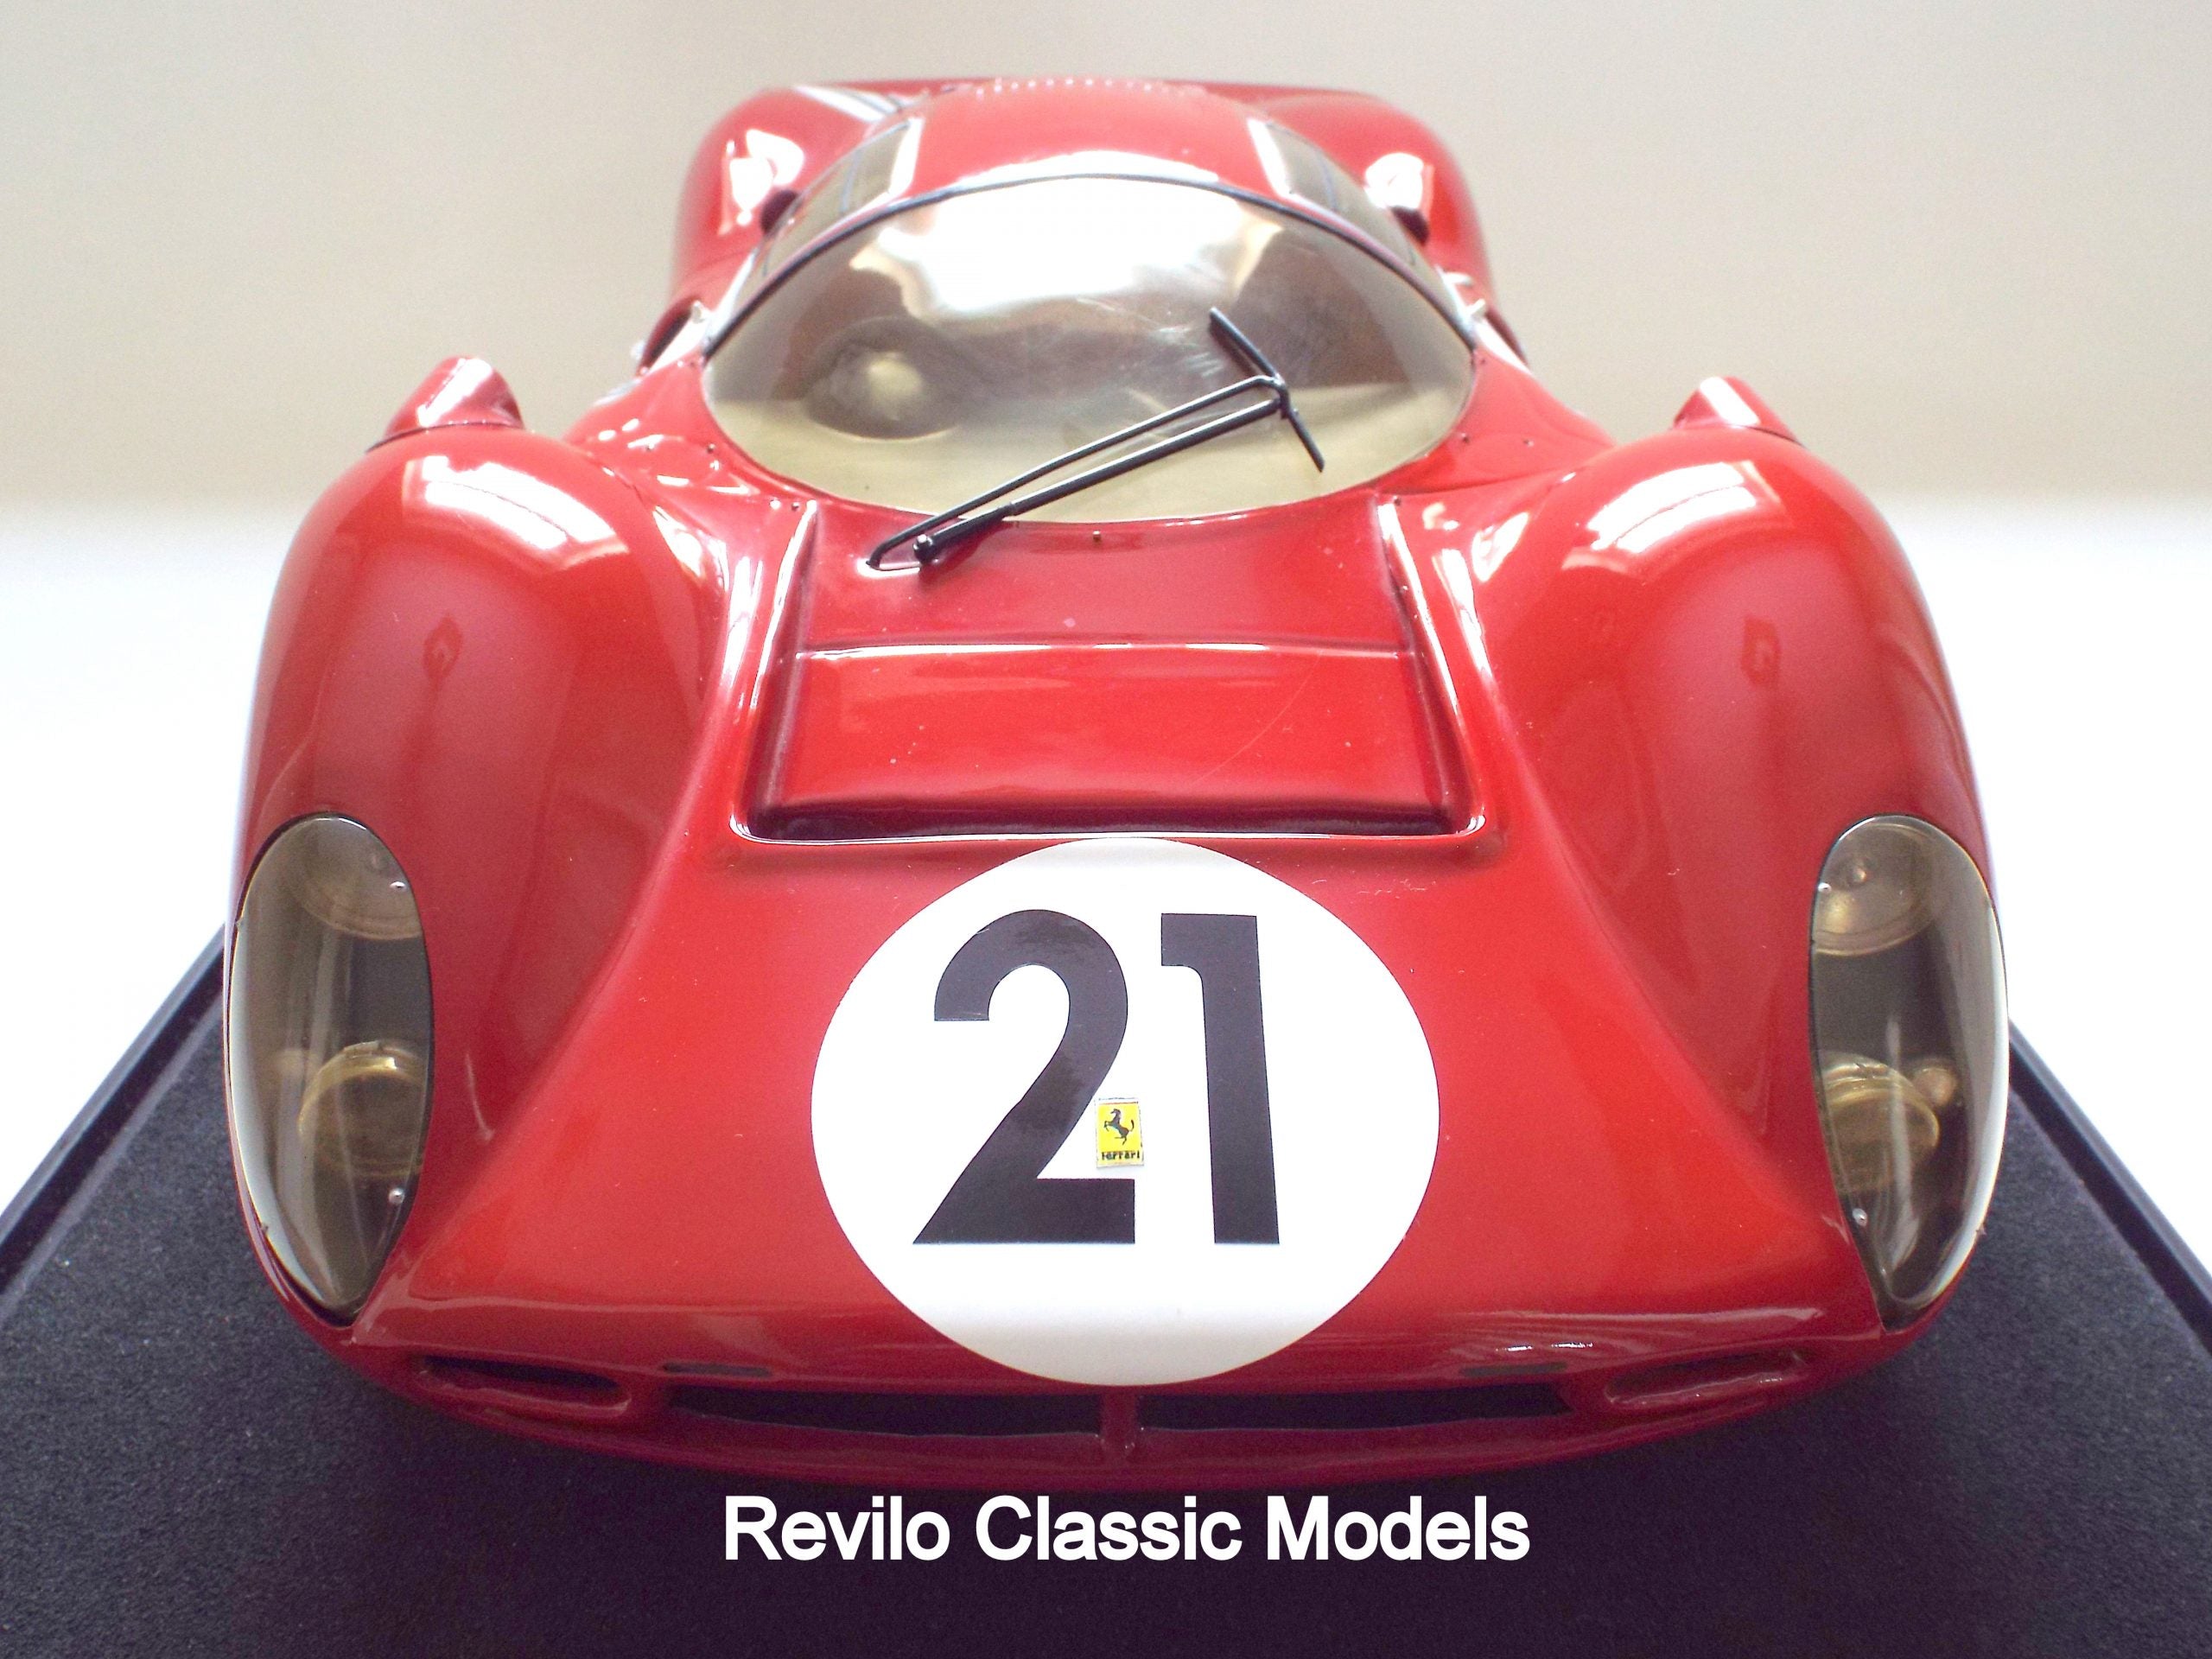 Ferrari 330 P4 1:8 scale model by Javan Smith